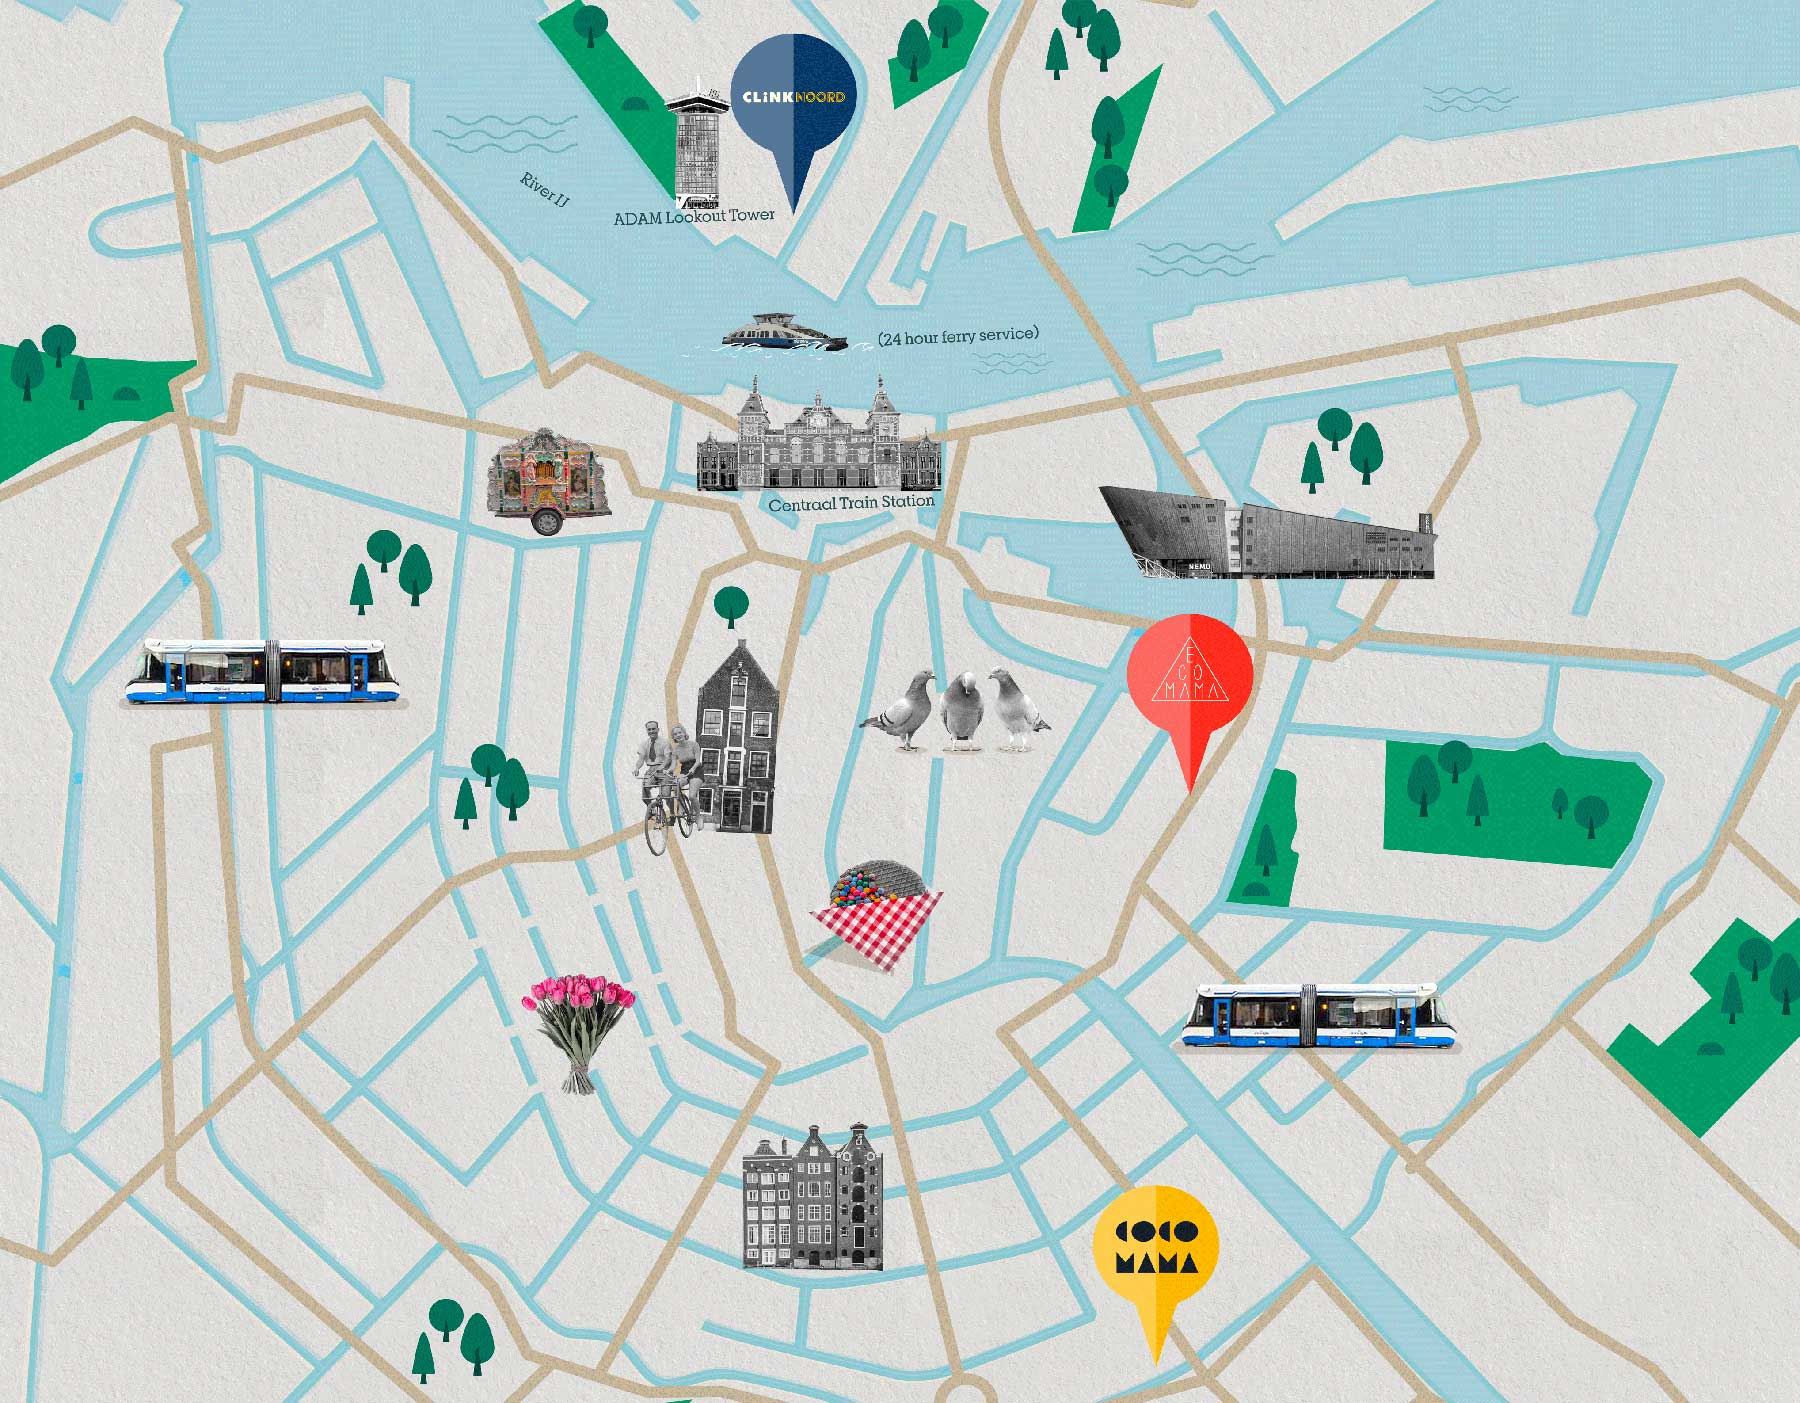 Plano de Ámsterdam con ClinkNOORD, Ecomama, Cocomama y atracciones turísticas